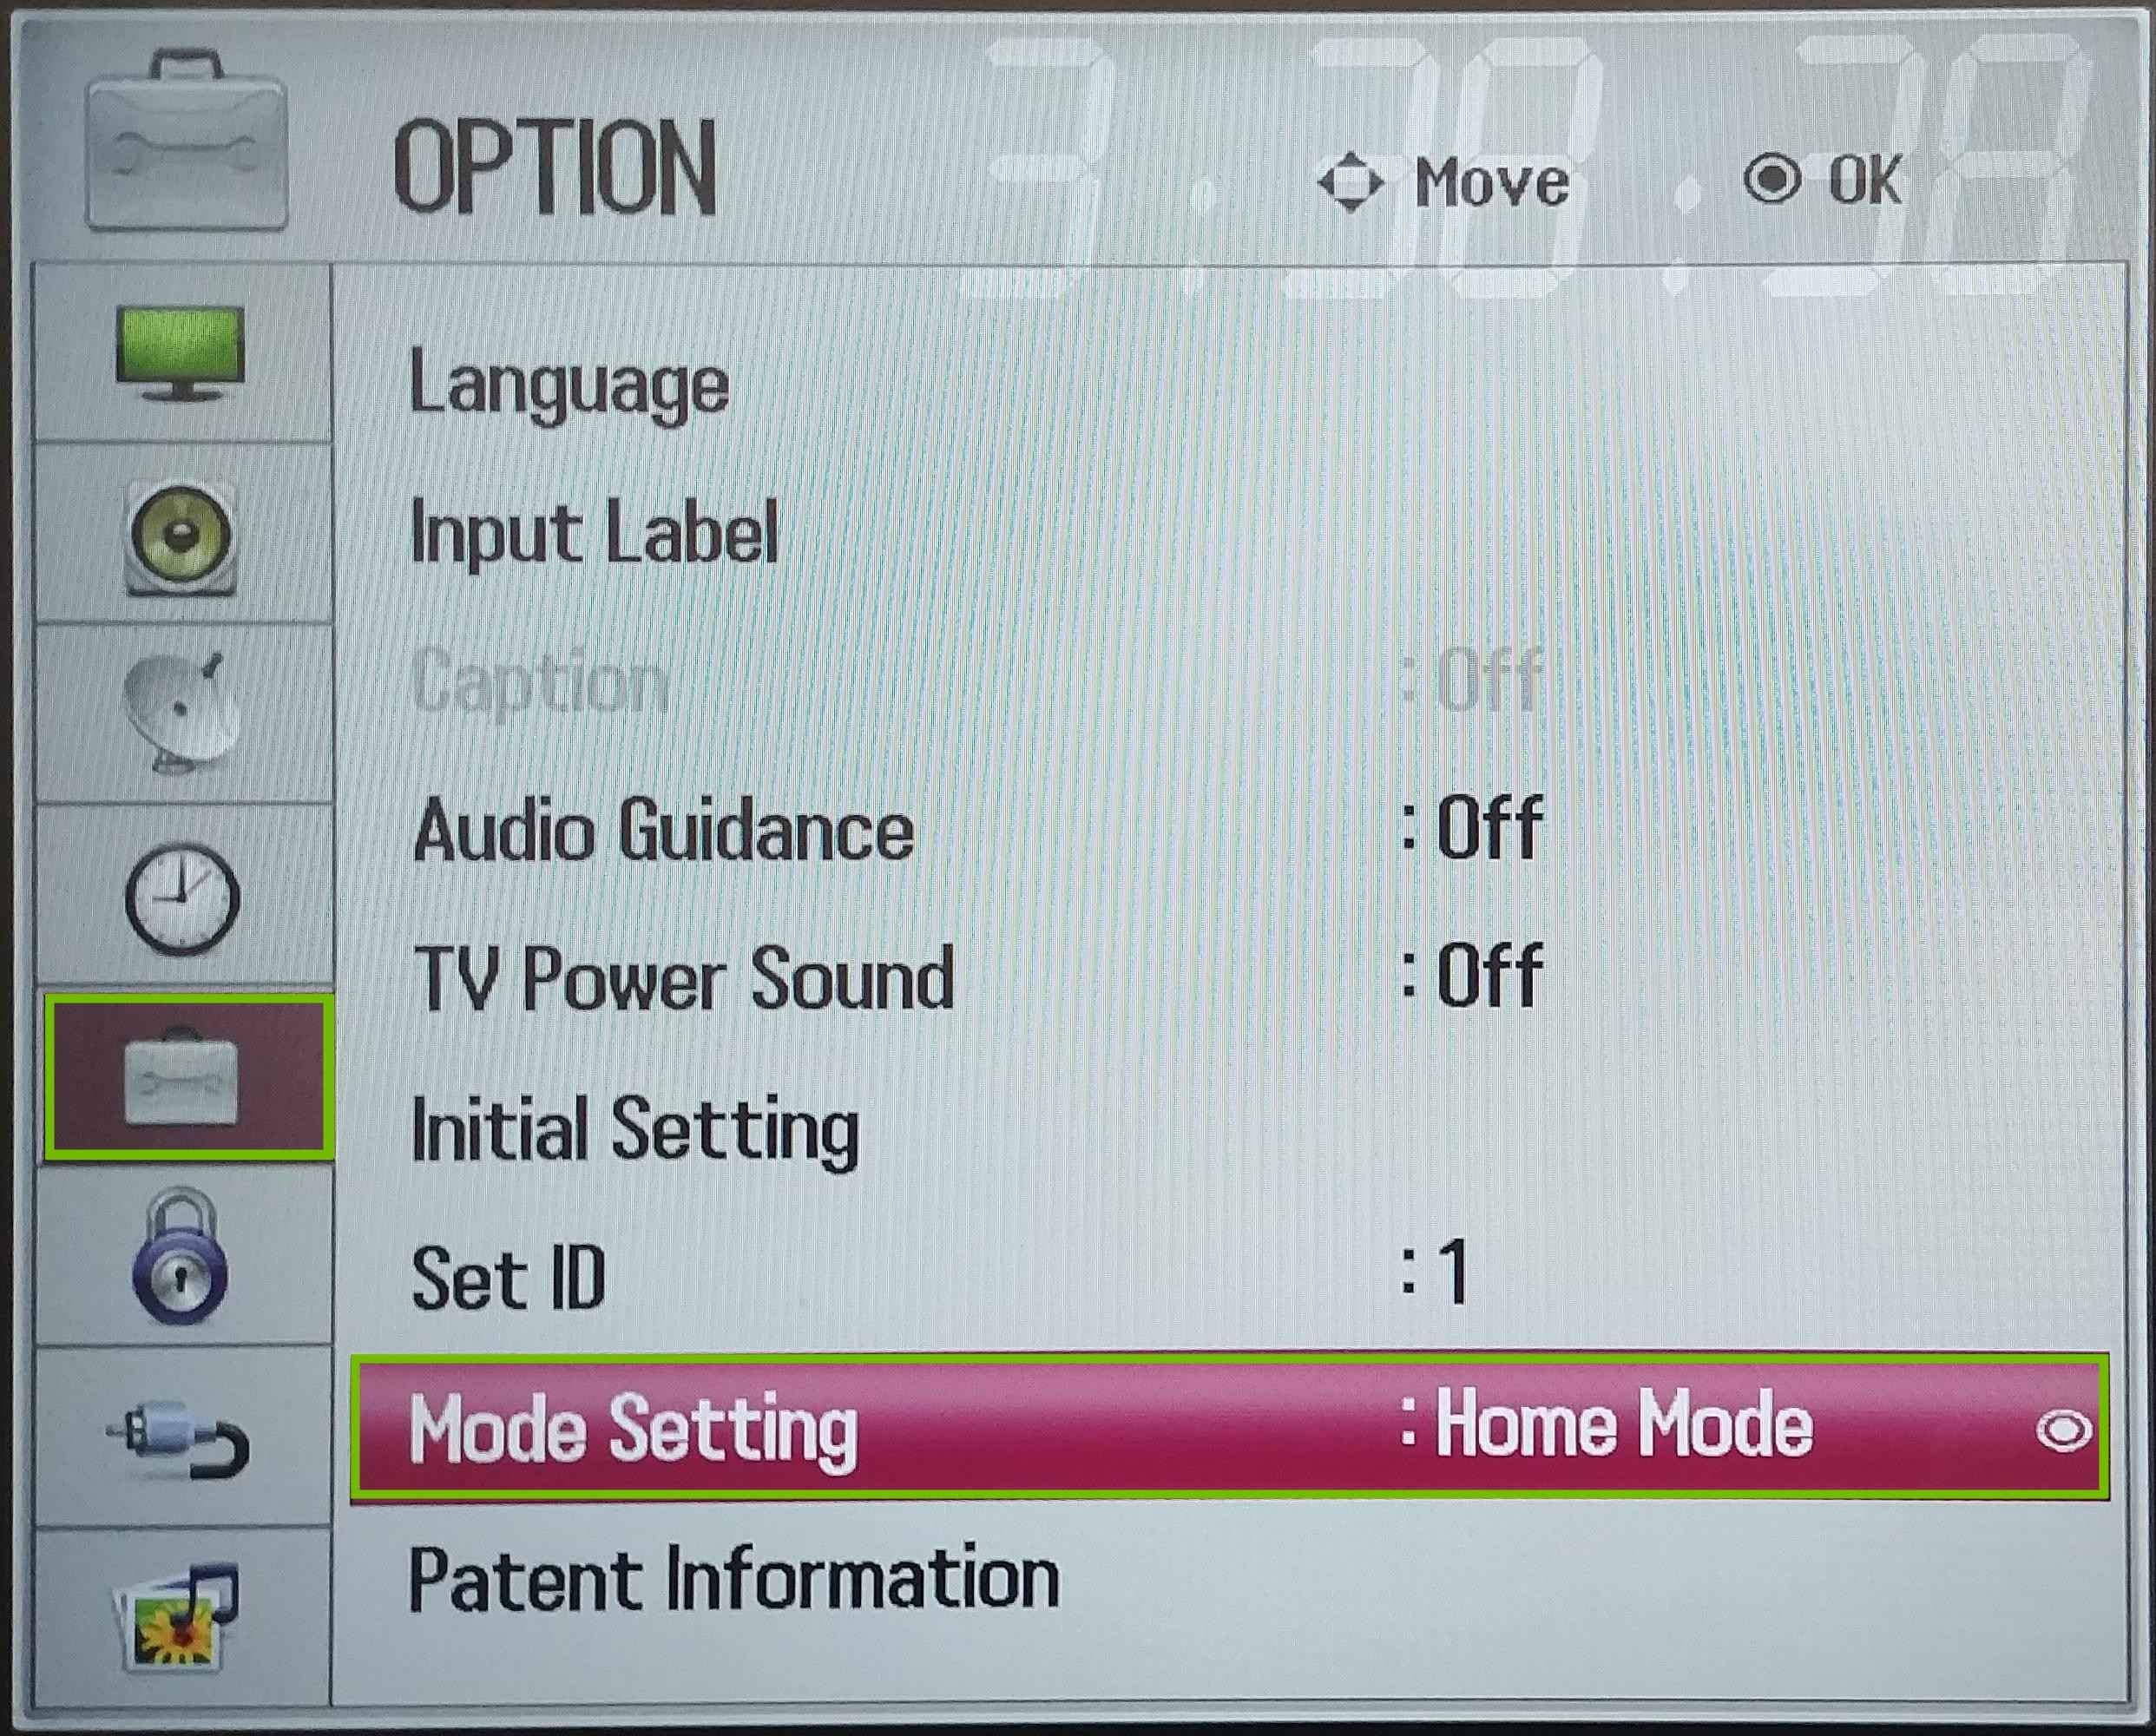 Select Mode Settings